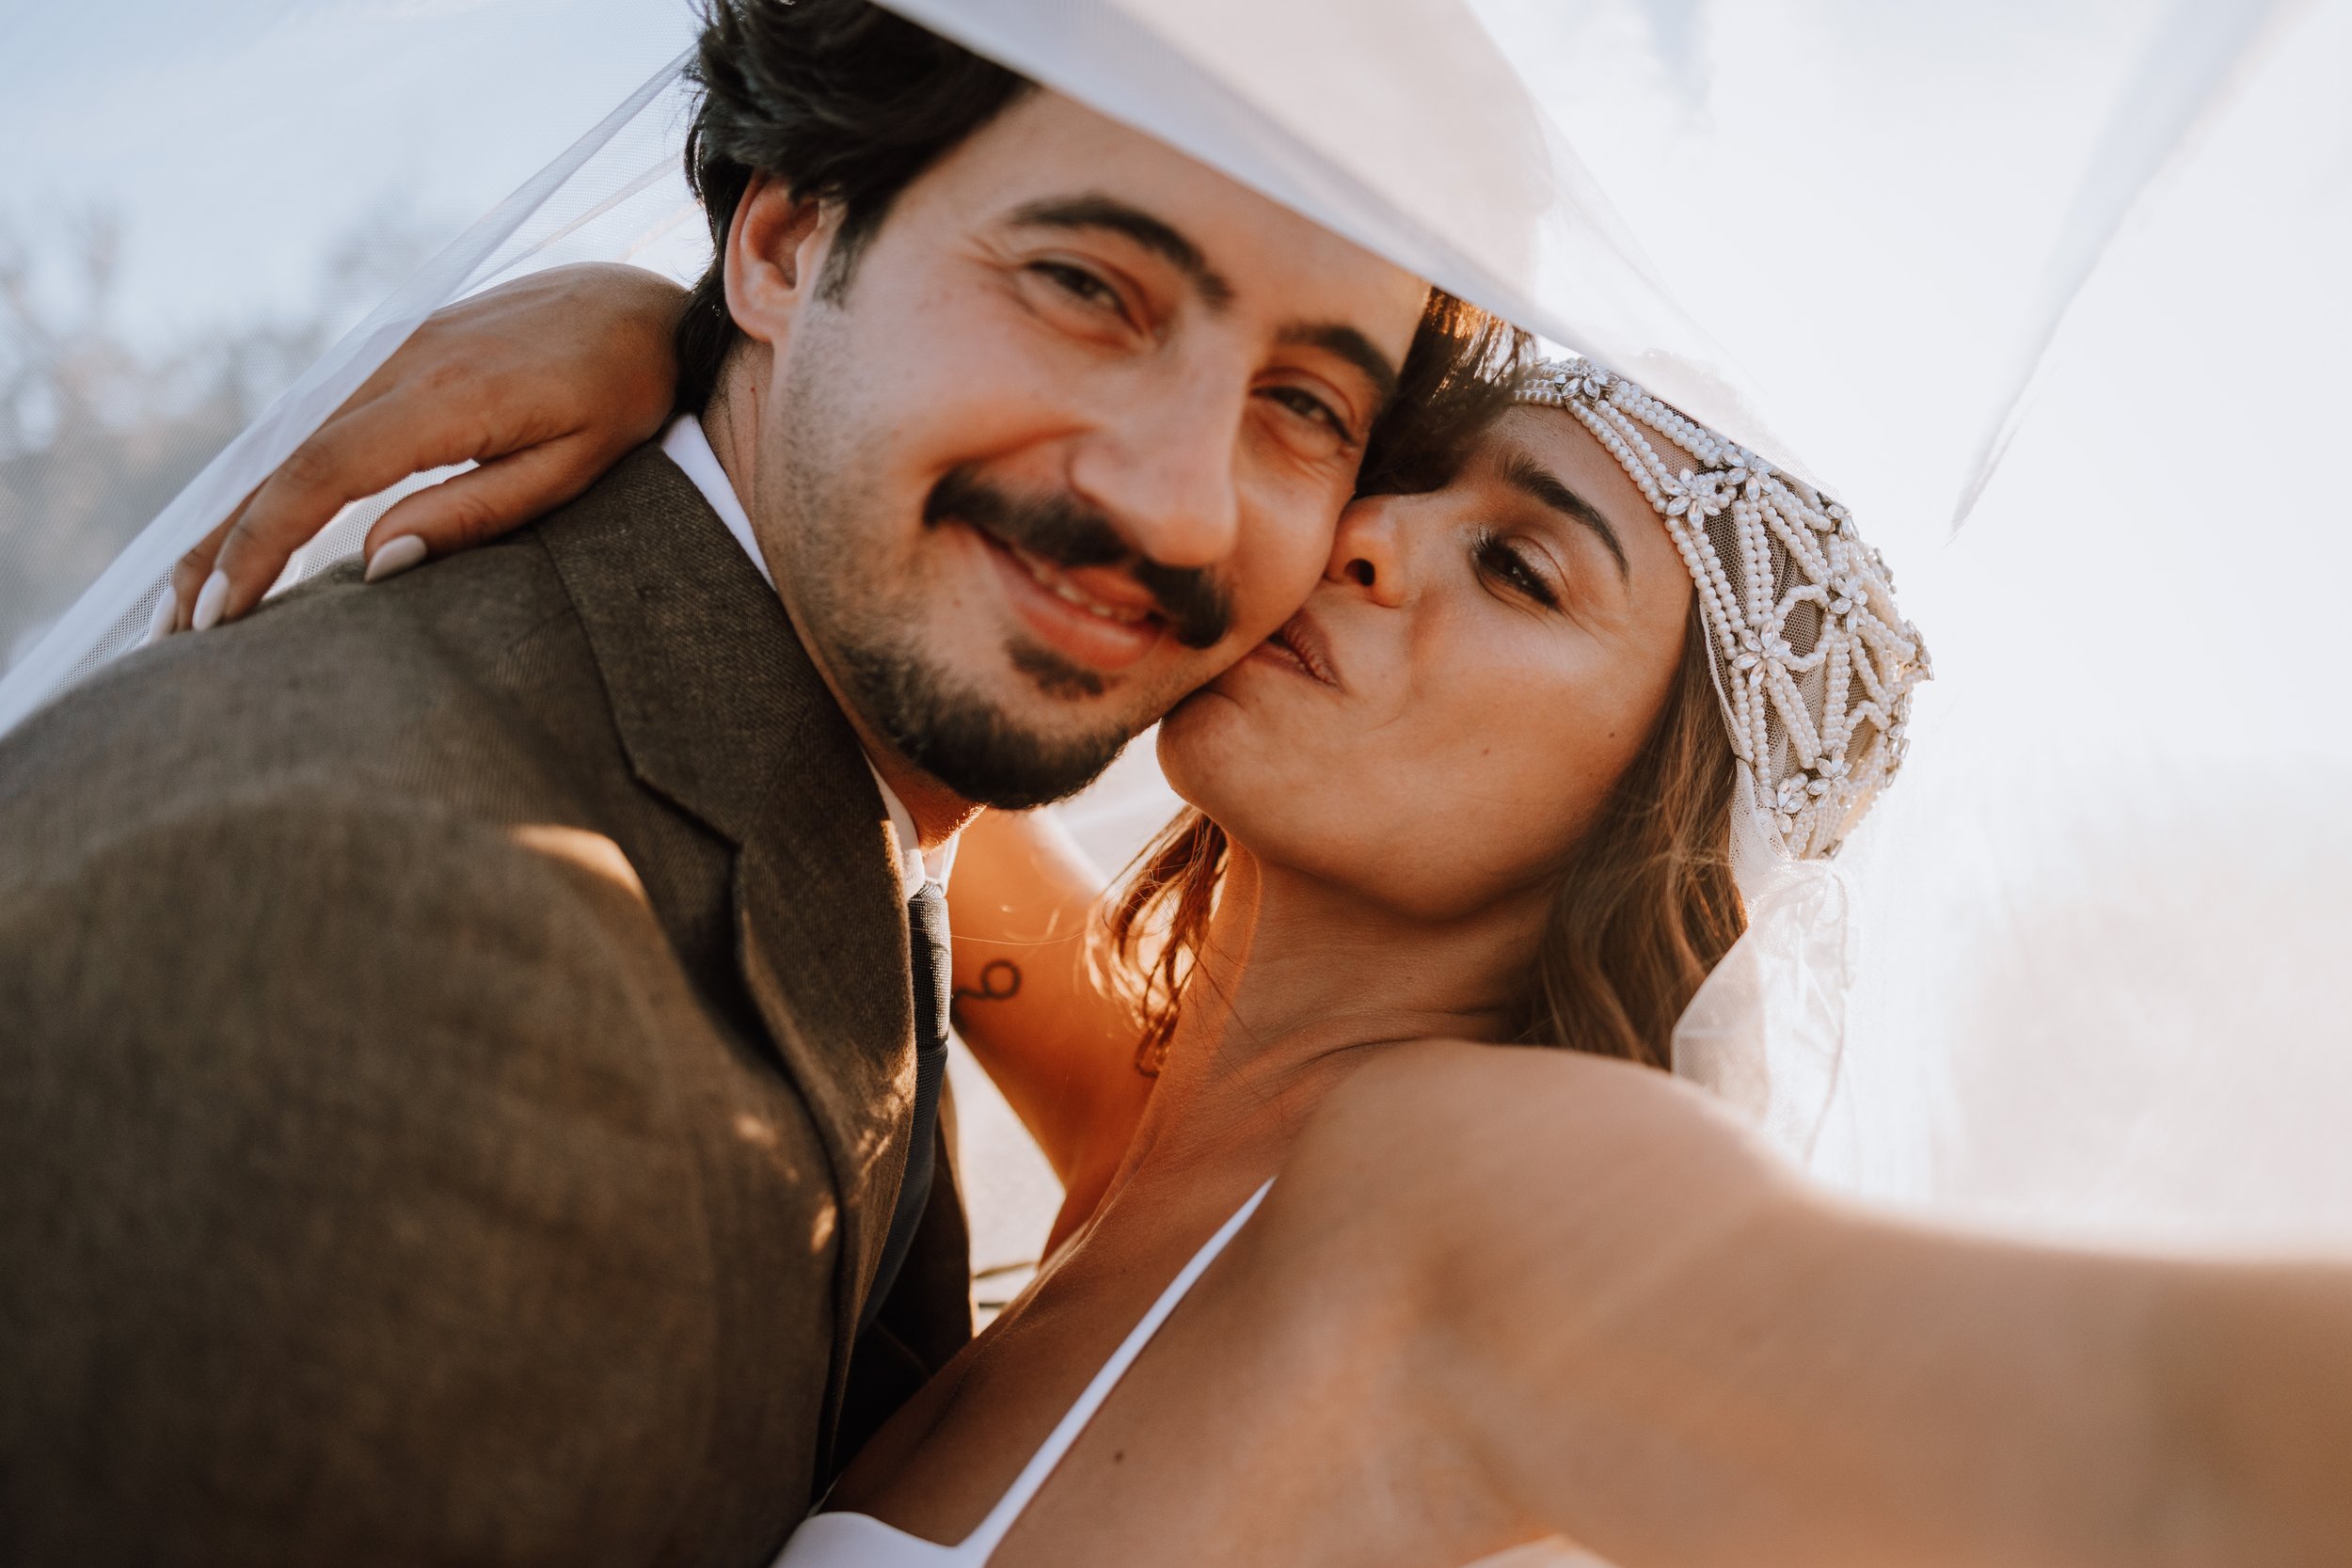 Tania Carvalho Destination Wedding Photographer Fita Preta Alentejo